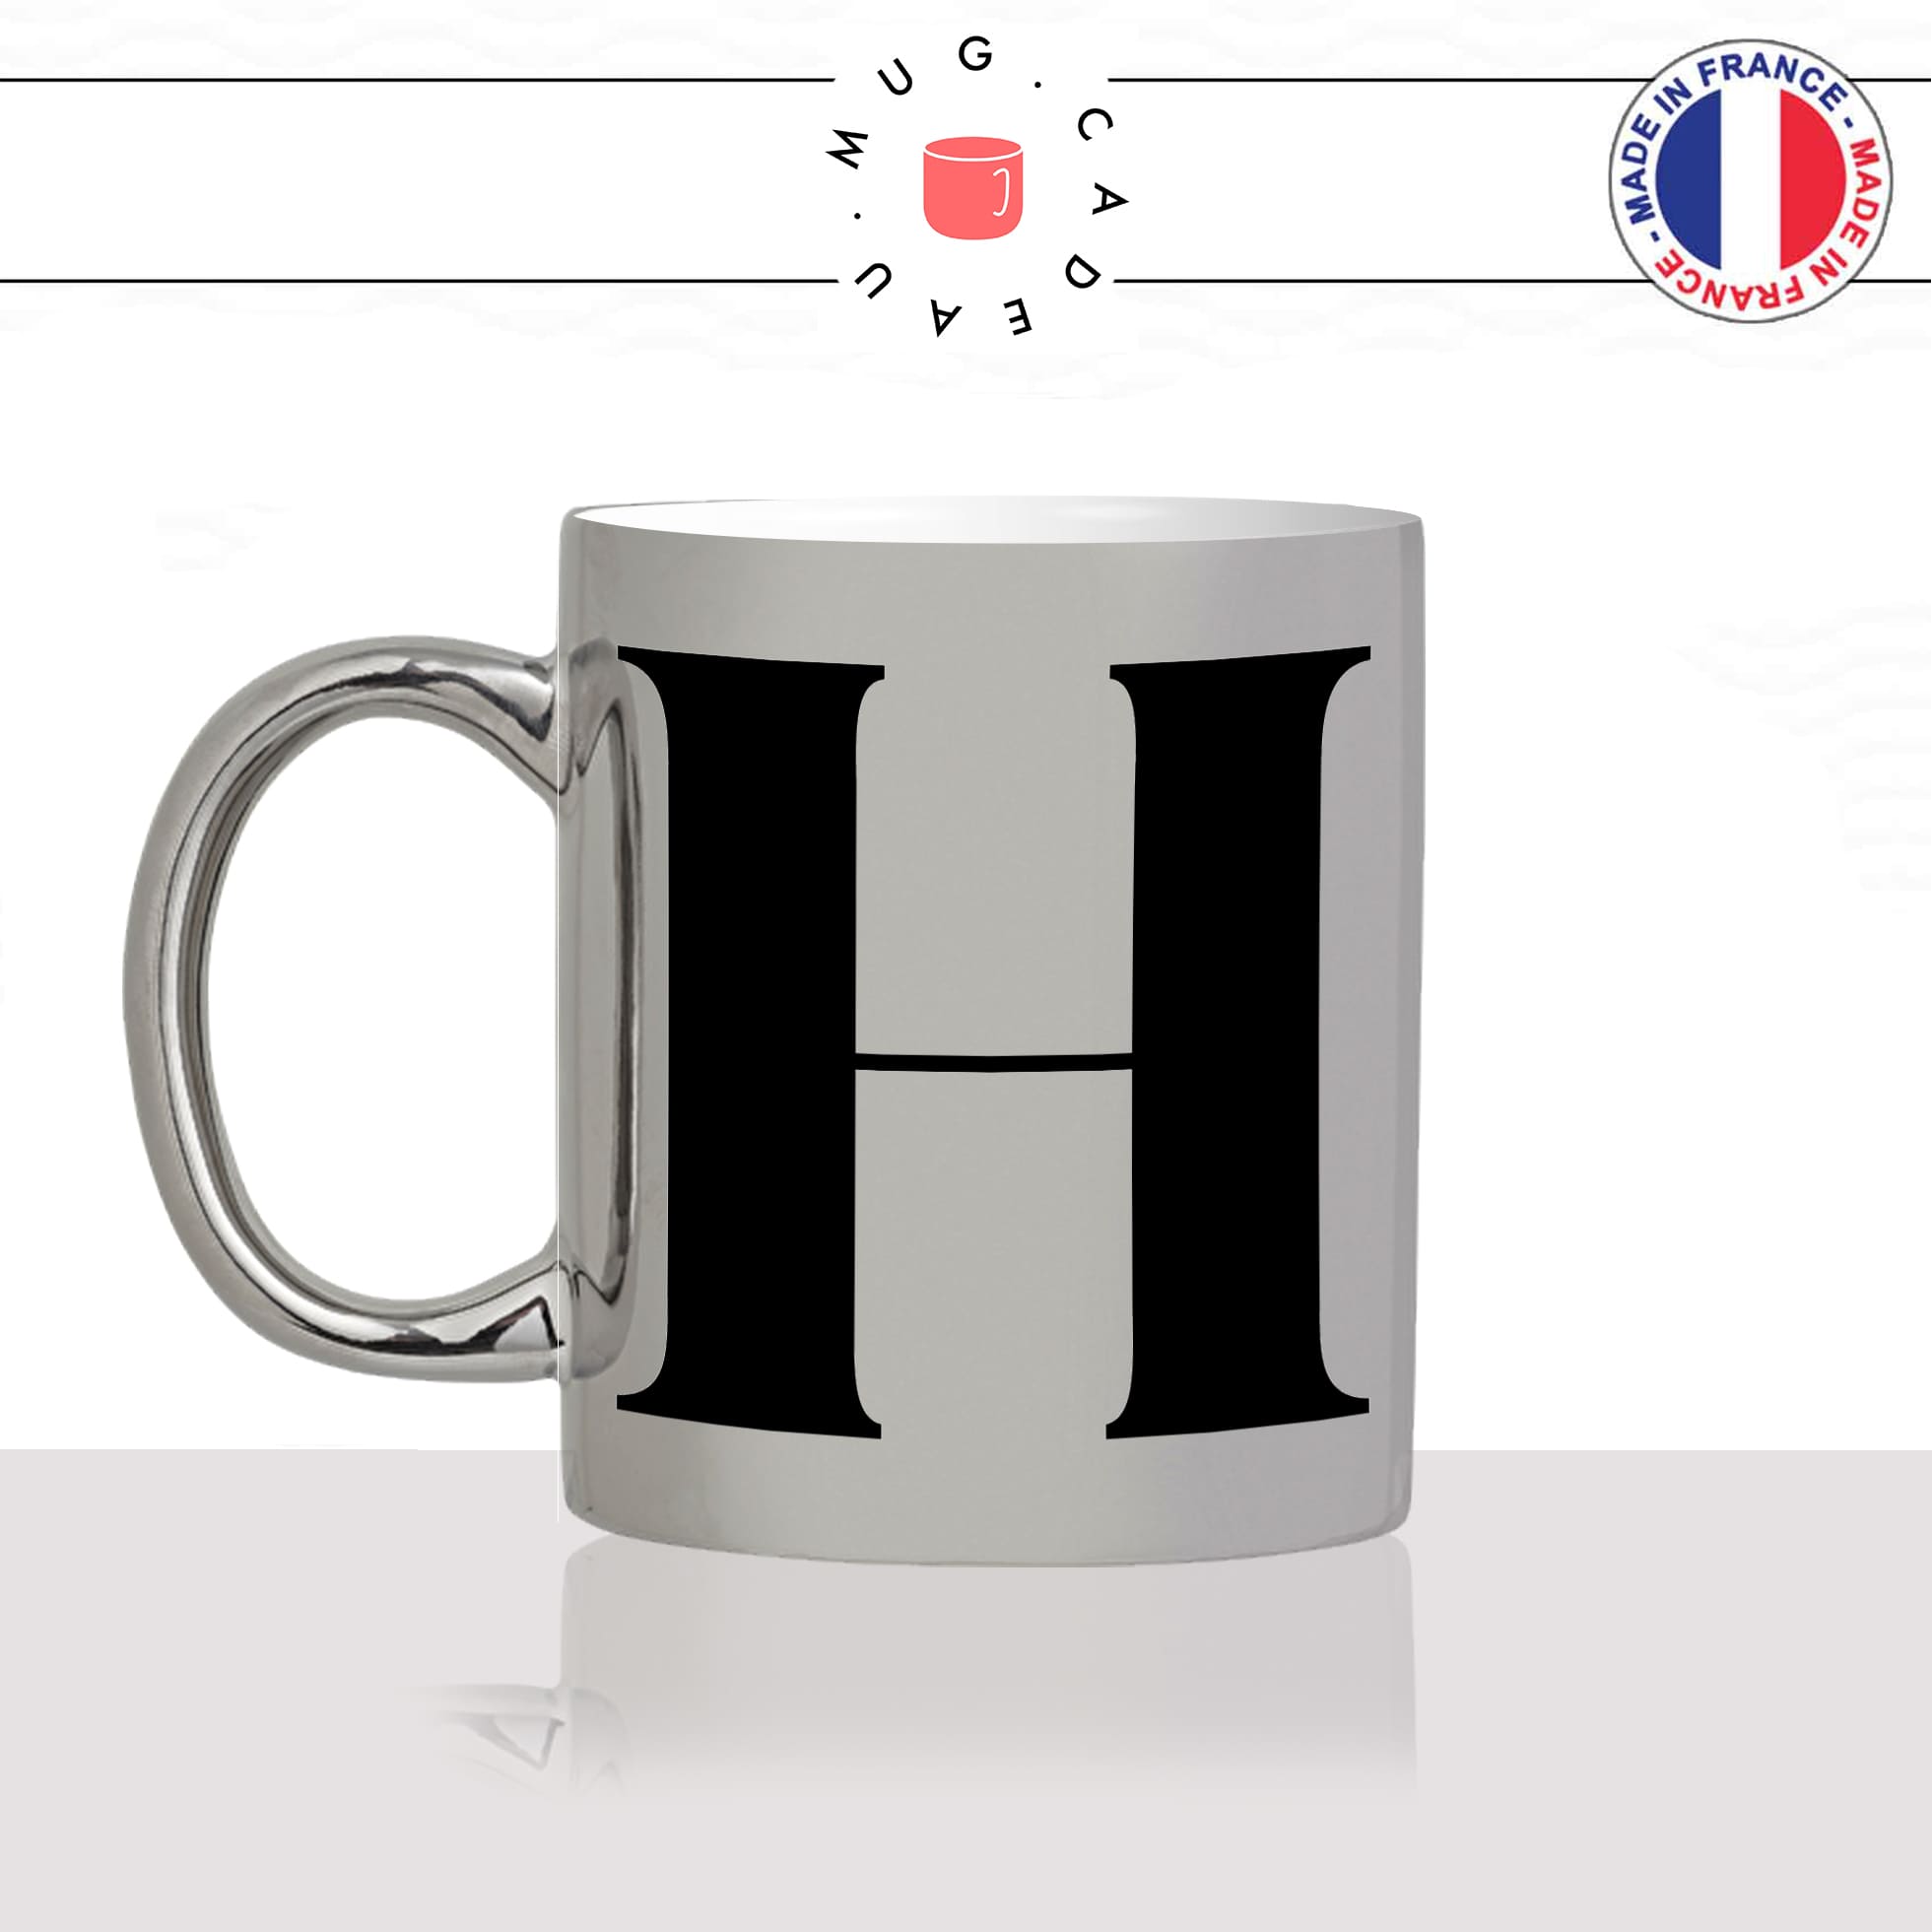 mug-tasse-argent-argenté-silver-initiale-H-harry-hector-hermione-henry-majuscule-lettre-collegue-original-idée-cadeau-fun-cool-café-thé